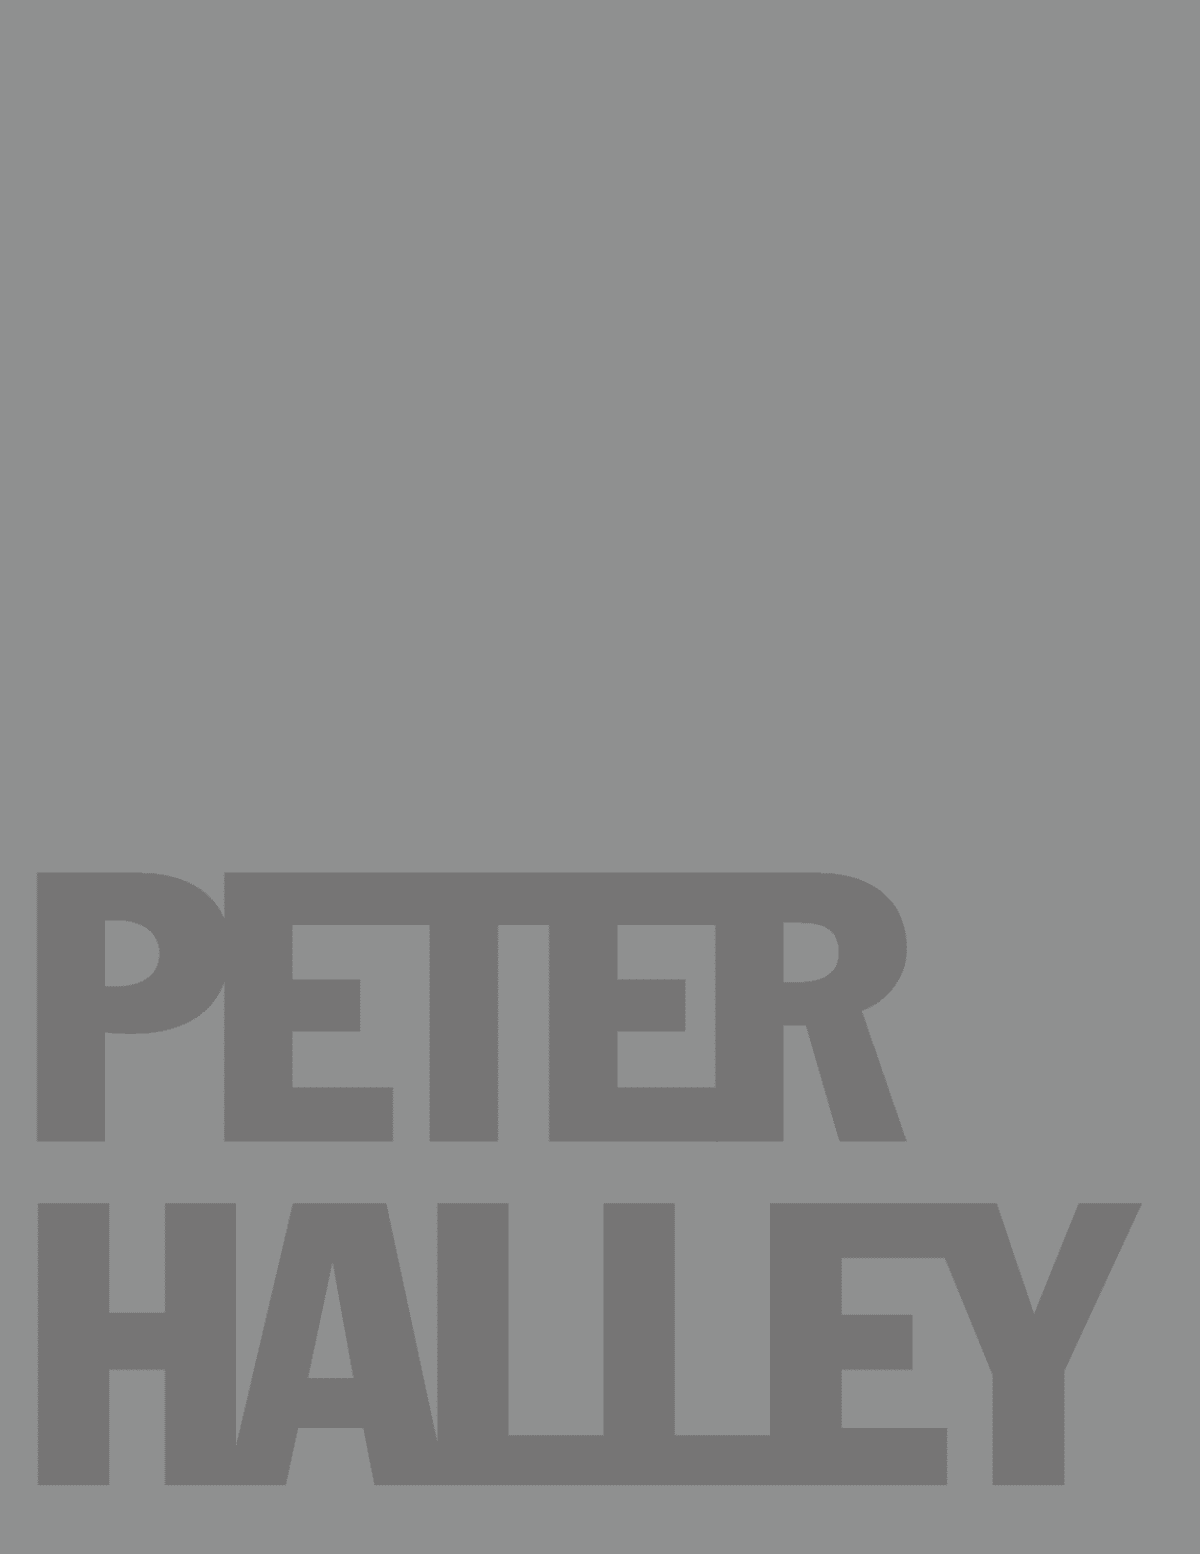 Peter Halley